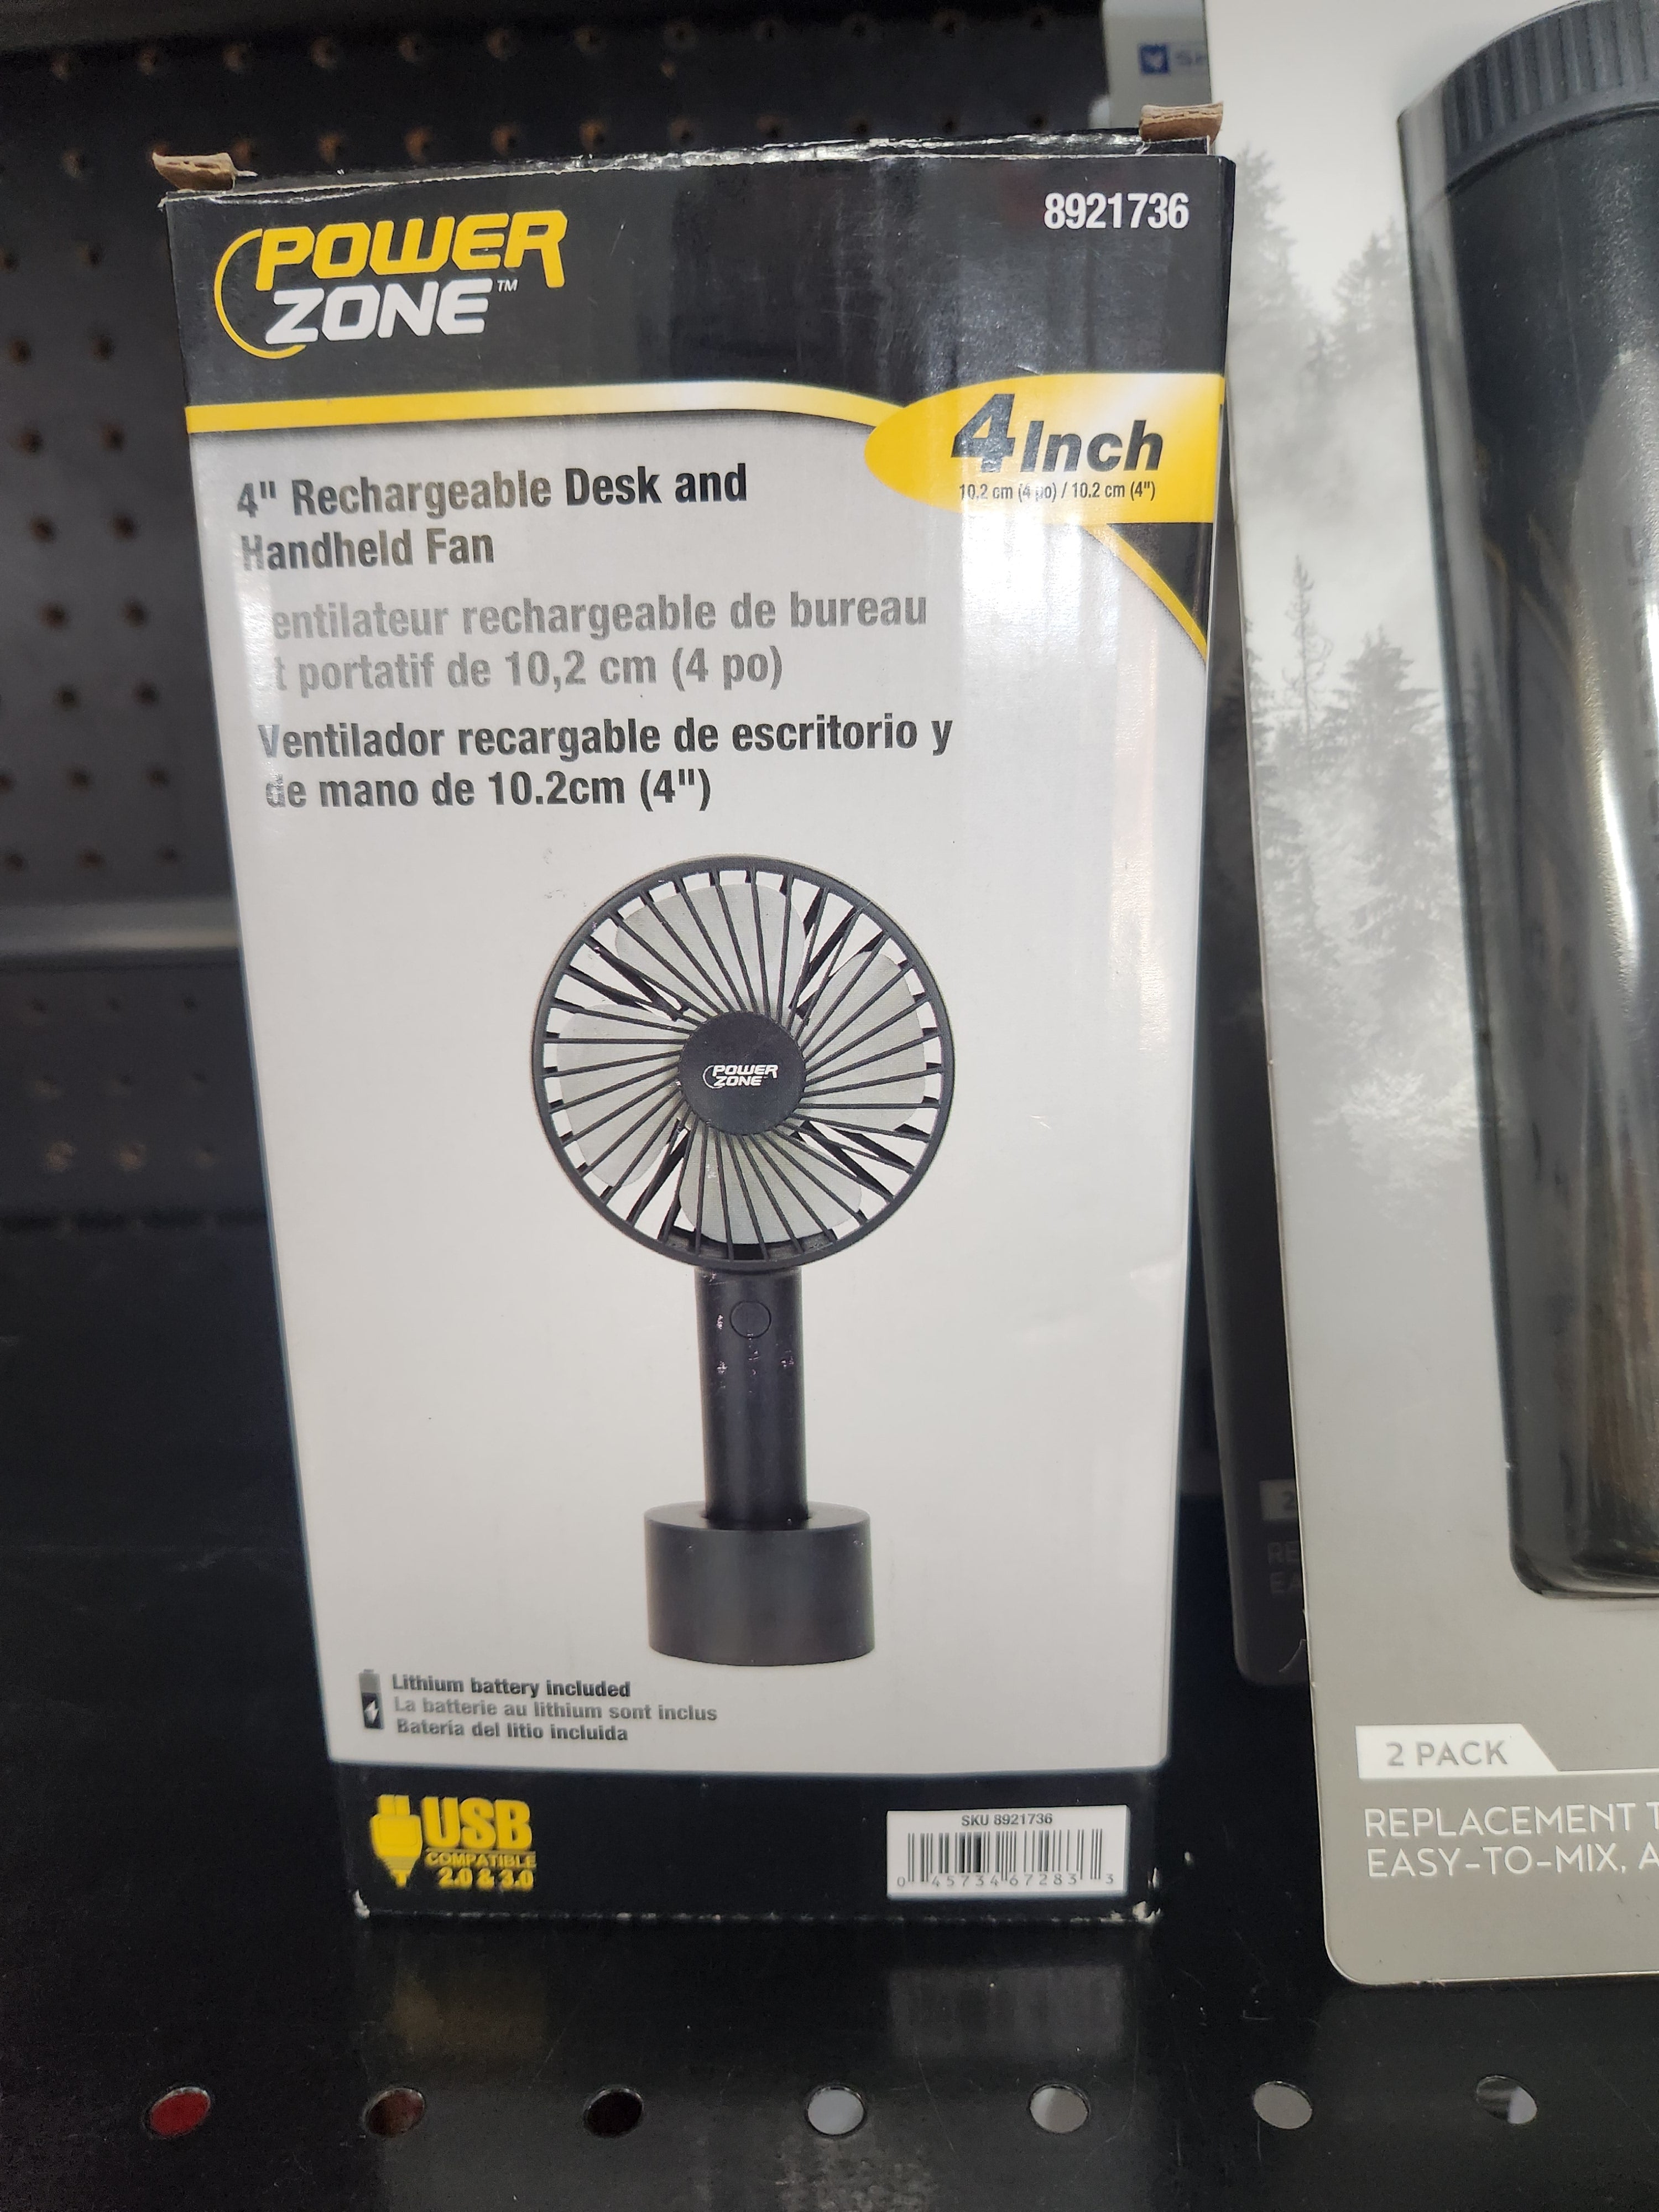 Power Zone 4" Rechargeable Desk & Handheld Fan